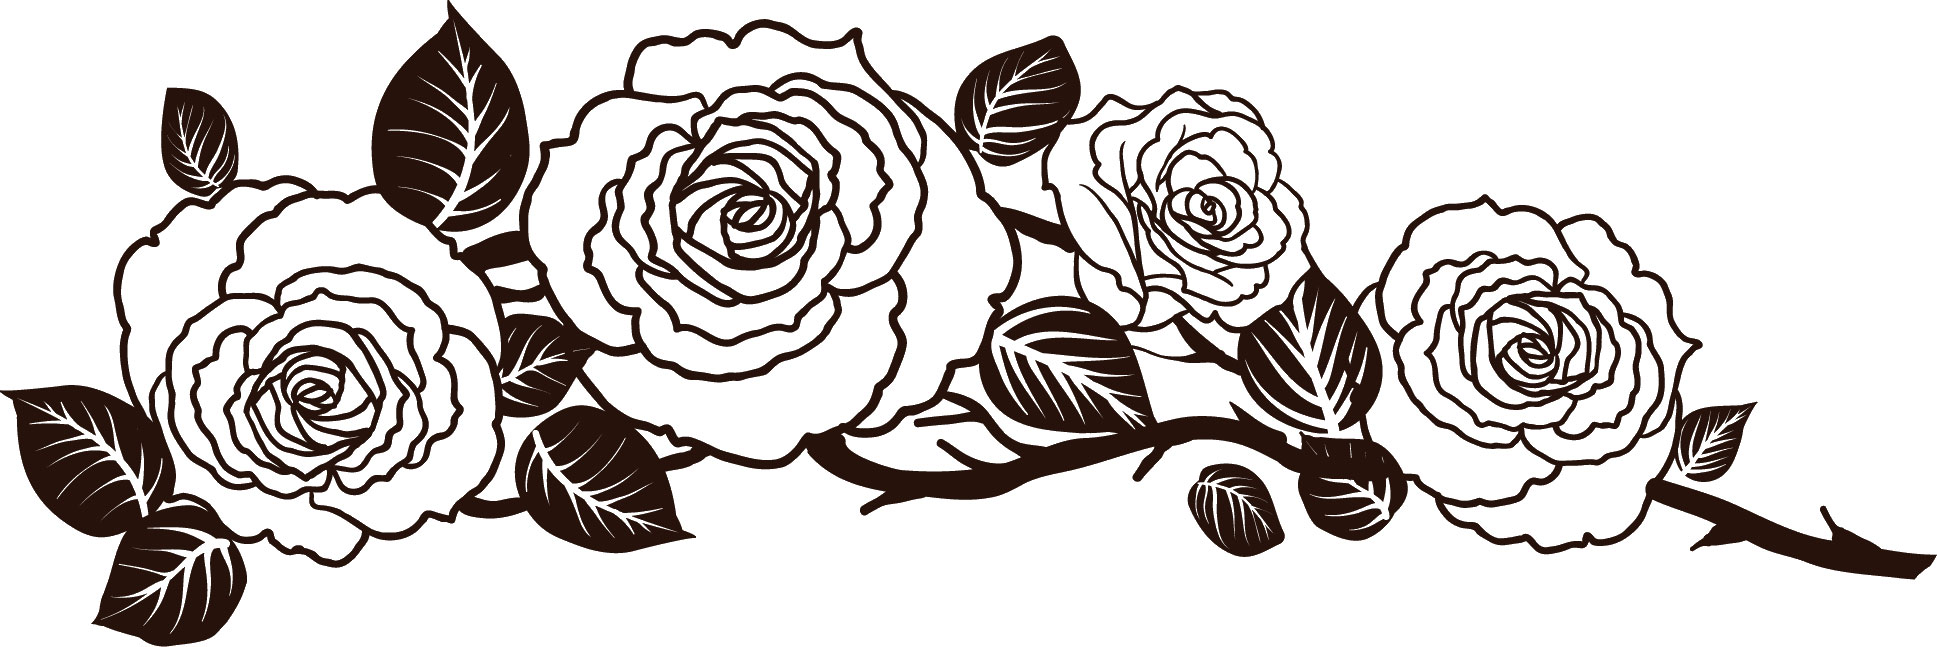 花のイラスト フリー素材 白黒 モノクロno 362 白黒 バラ模様